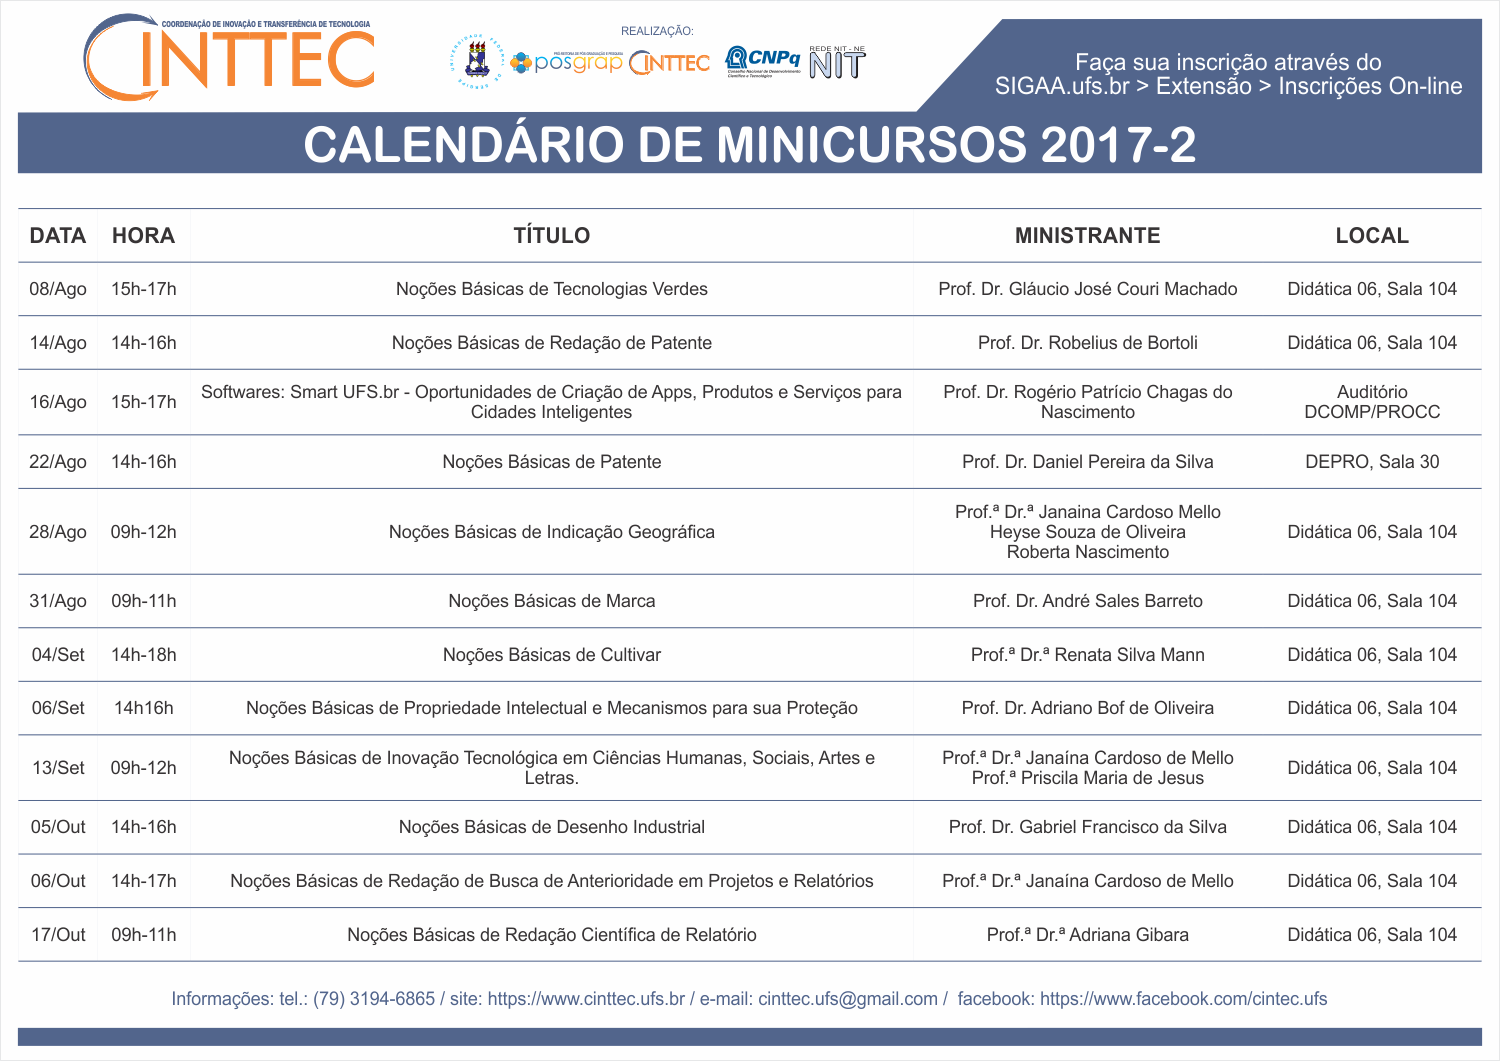 Calendário de Minicursos CINTTEC 2017-2